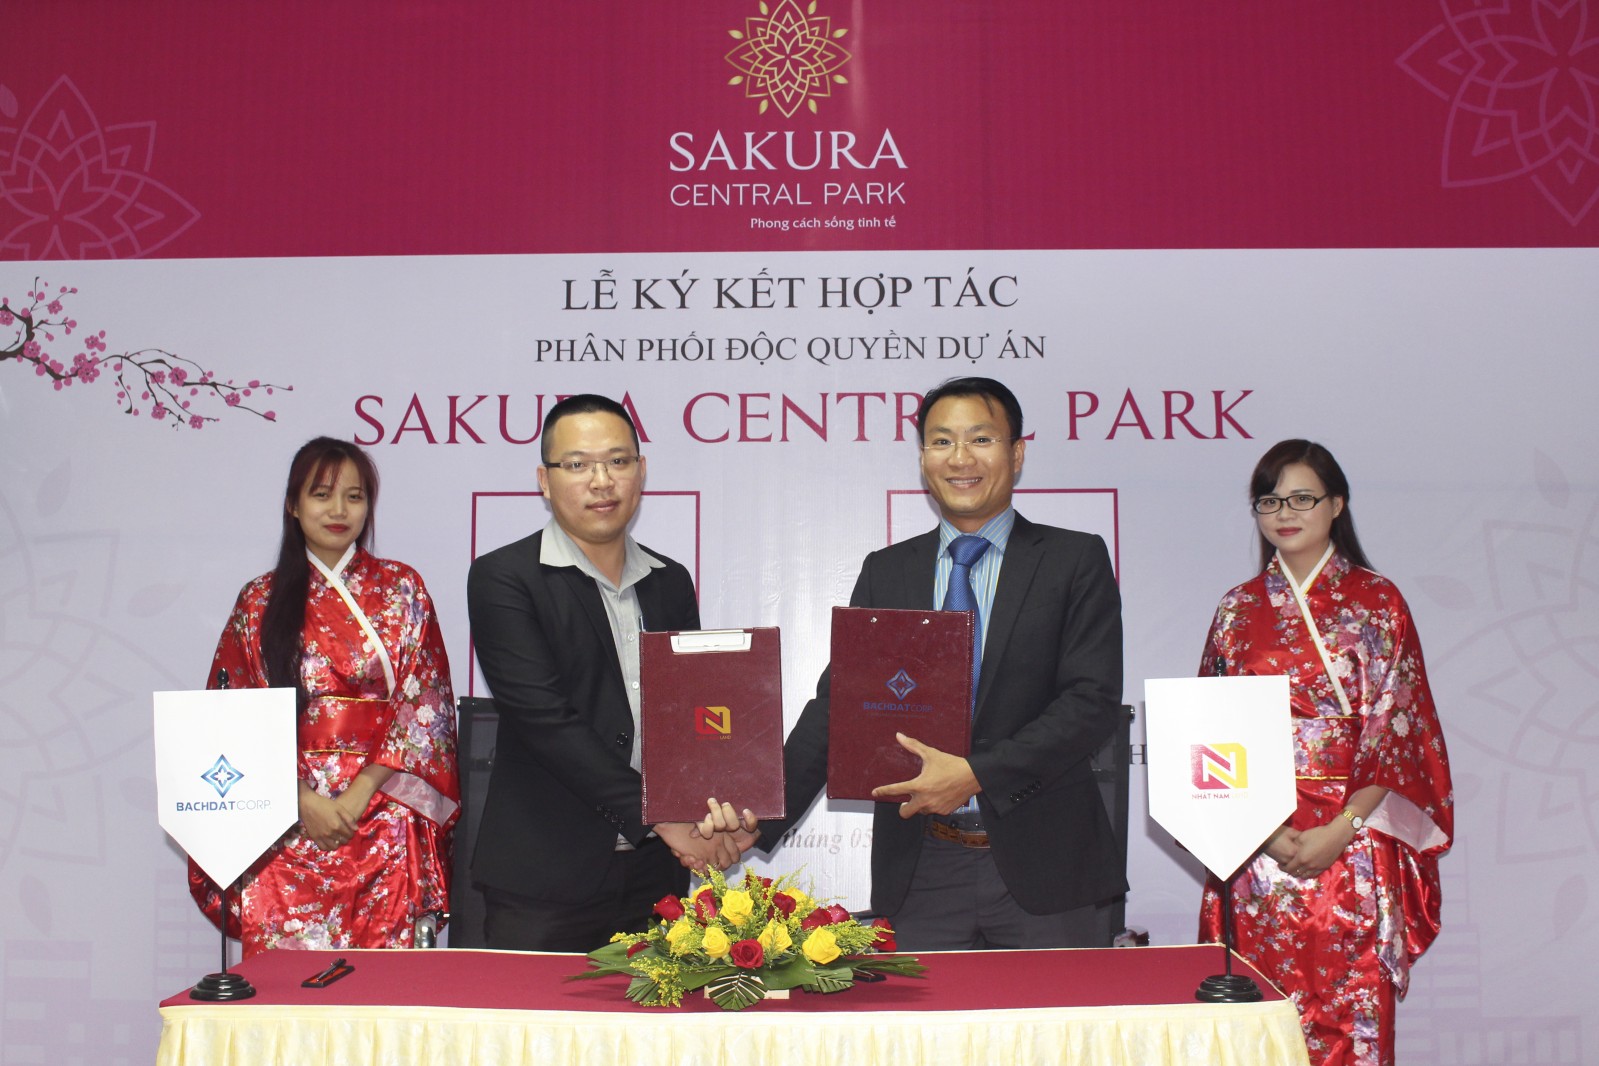 Ông Trương Văn Hào - Phó Tổng giám đốc Nhất Nam Land (phải) và ông Nguyễn Công Mẫn – Phó Giám đốc công ty Bách Đạt Corp (trái) ký kết hợp tác phân phối độc quyền dự án Sakura Central Park.